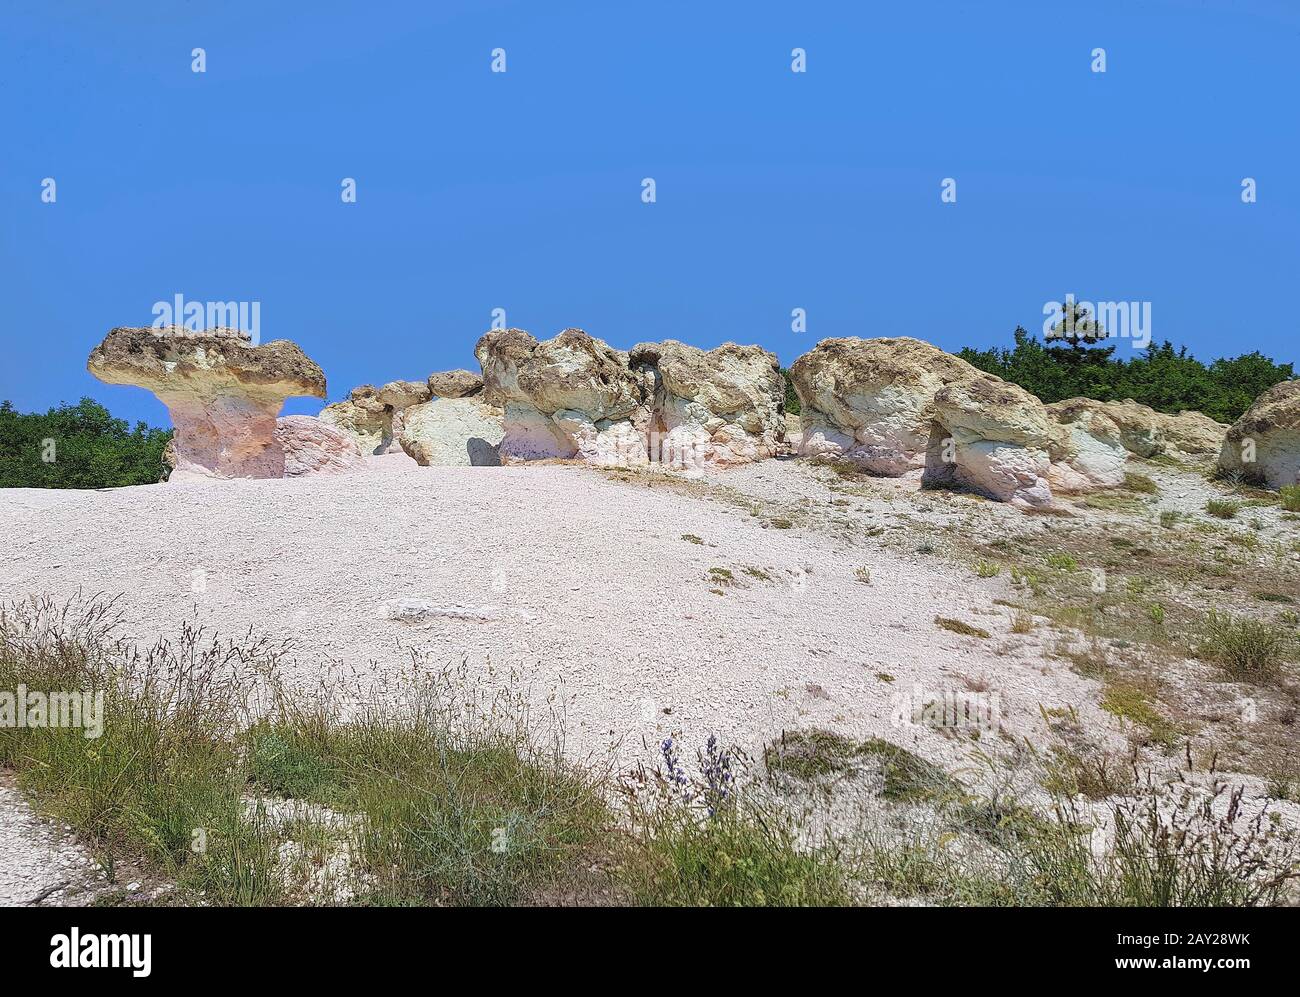 Bulgaria, fenomeno naturale pietre fungo rocce nel villaggio di Beli Plast Foto Stock